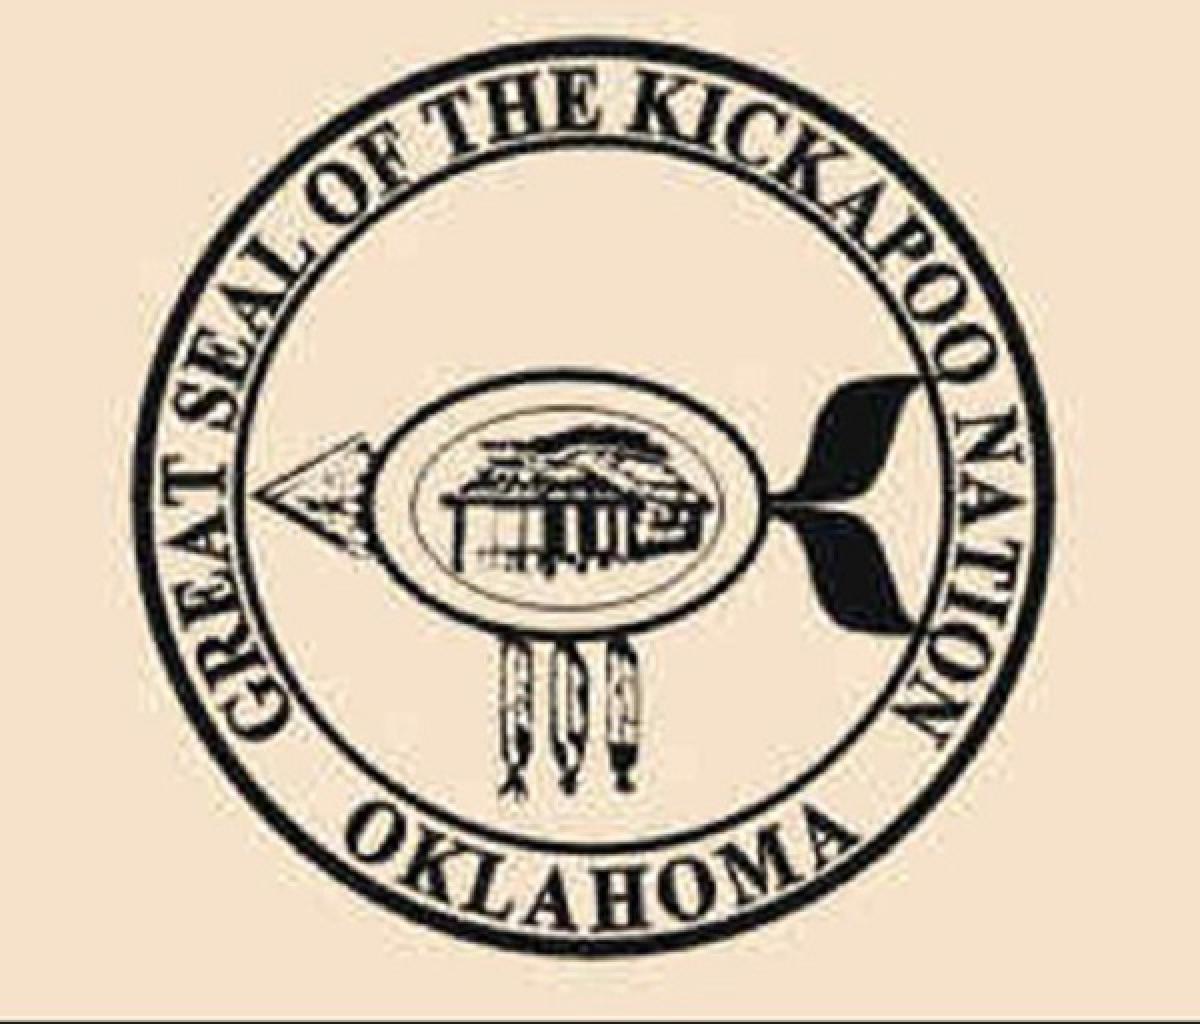 OK, Grove, Headstone Symbols and Meanings, Kickapoo Tribe of Oklahoma